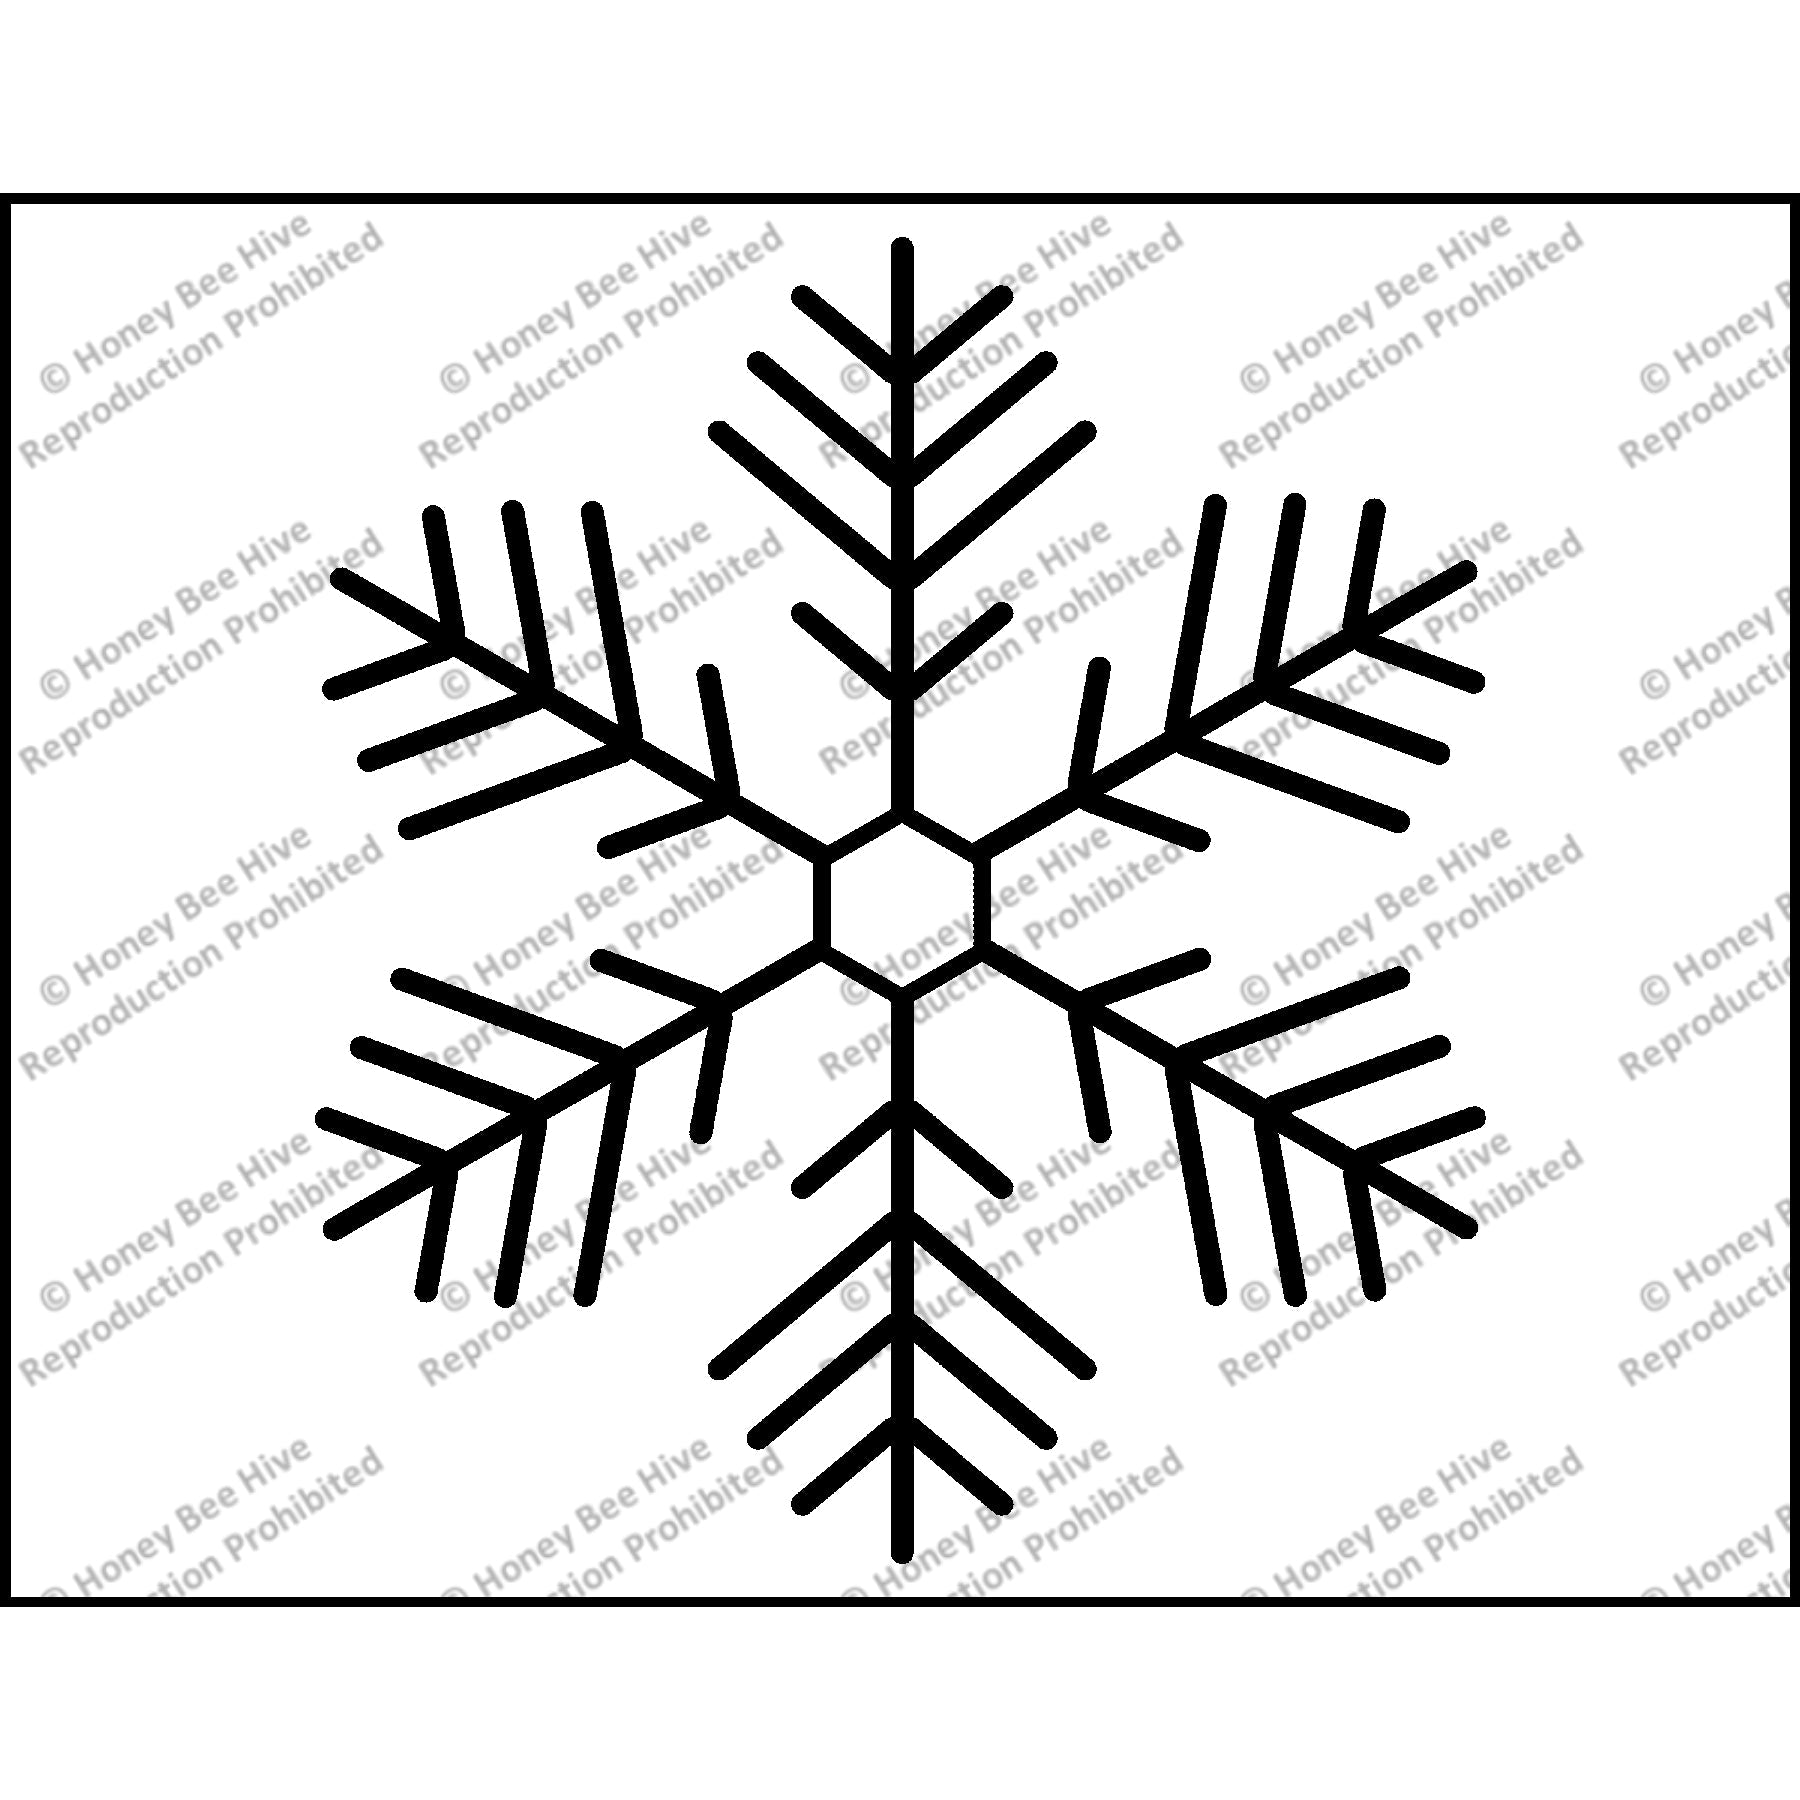 Snowflake, rug hooking pattern